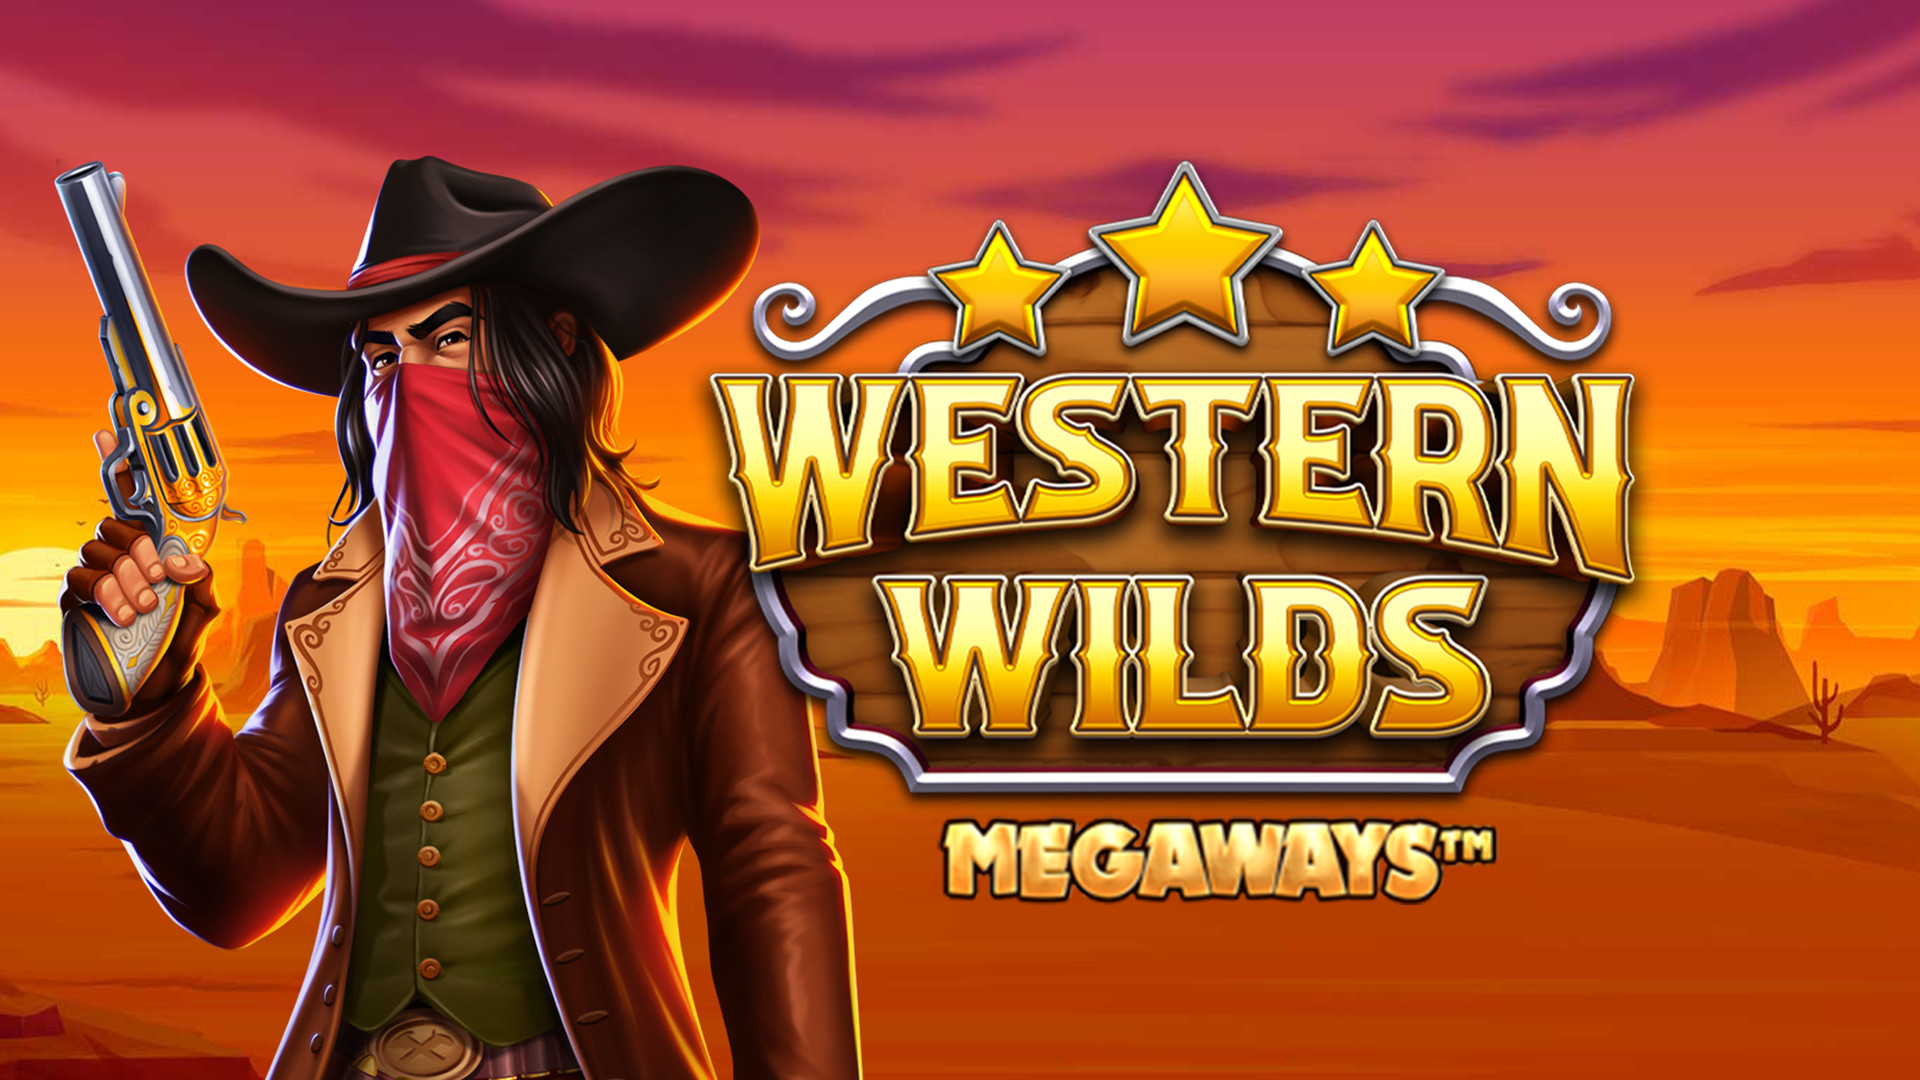 Western Wilds MEGAWAYS